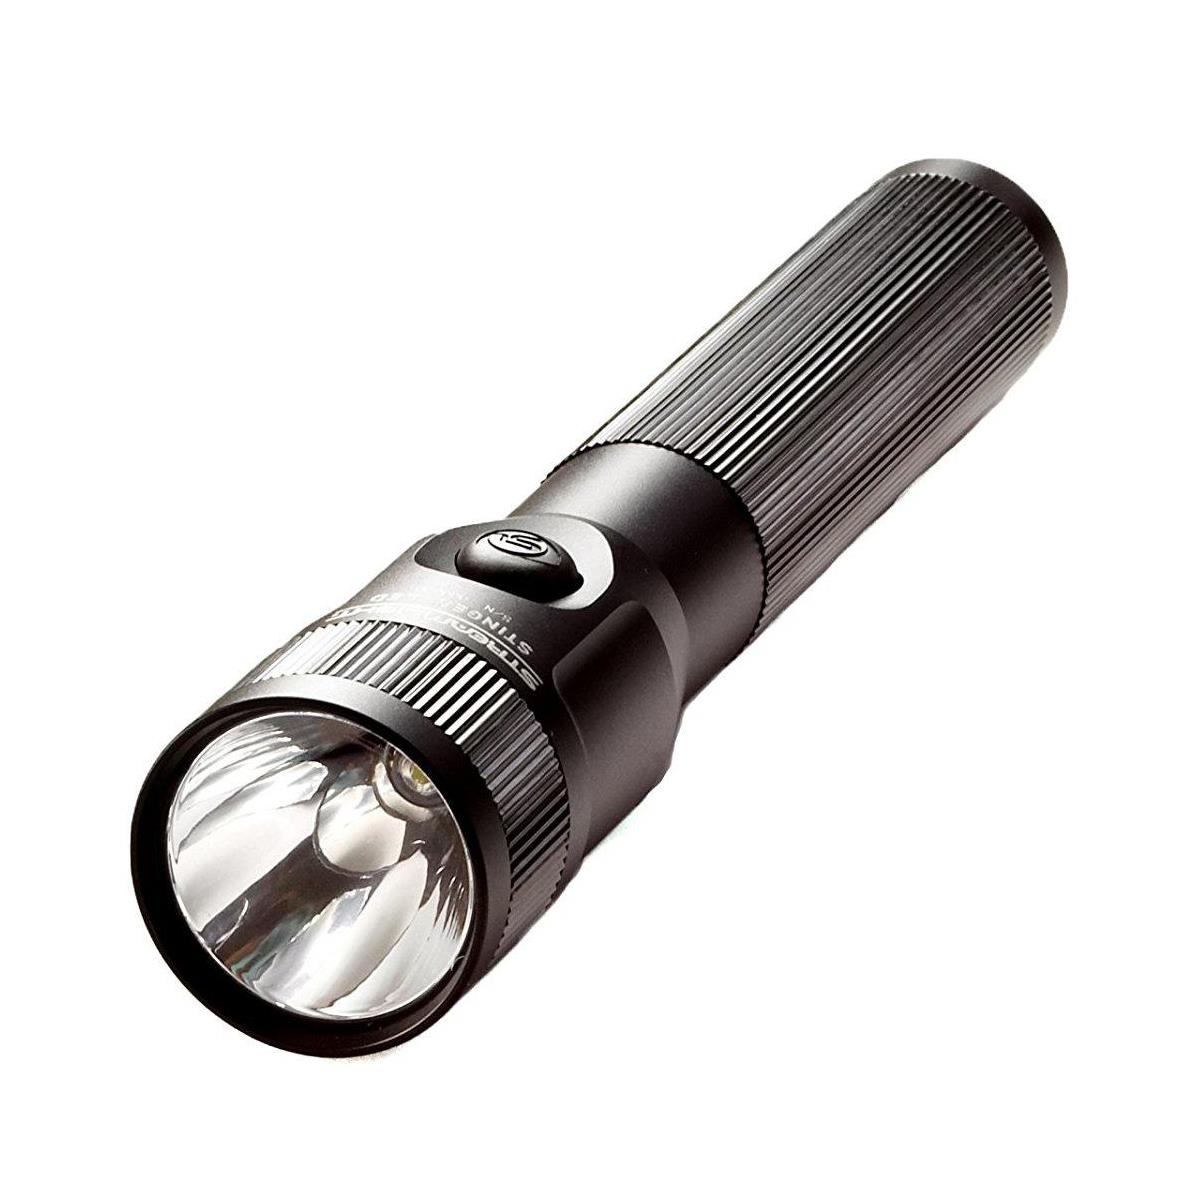 Image of Streamlight Stinger LED Flashlight